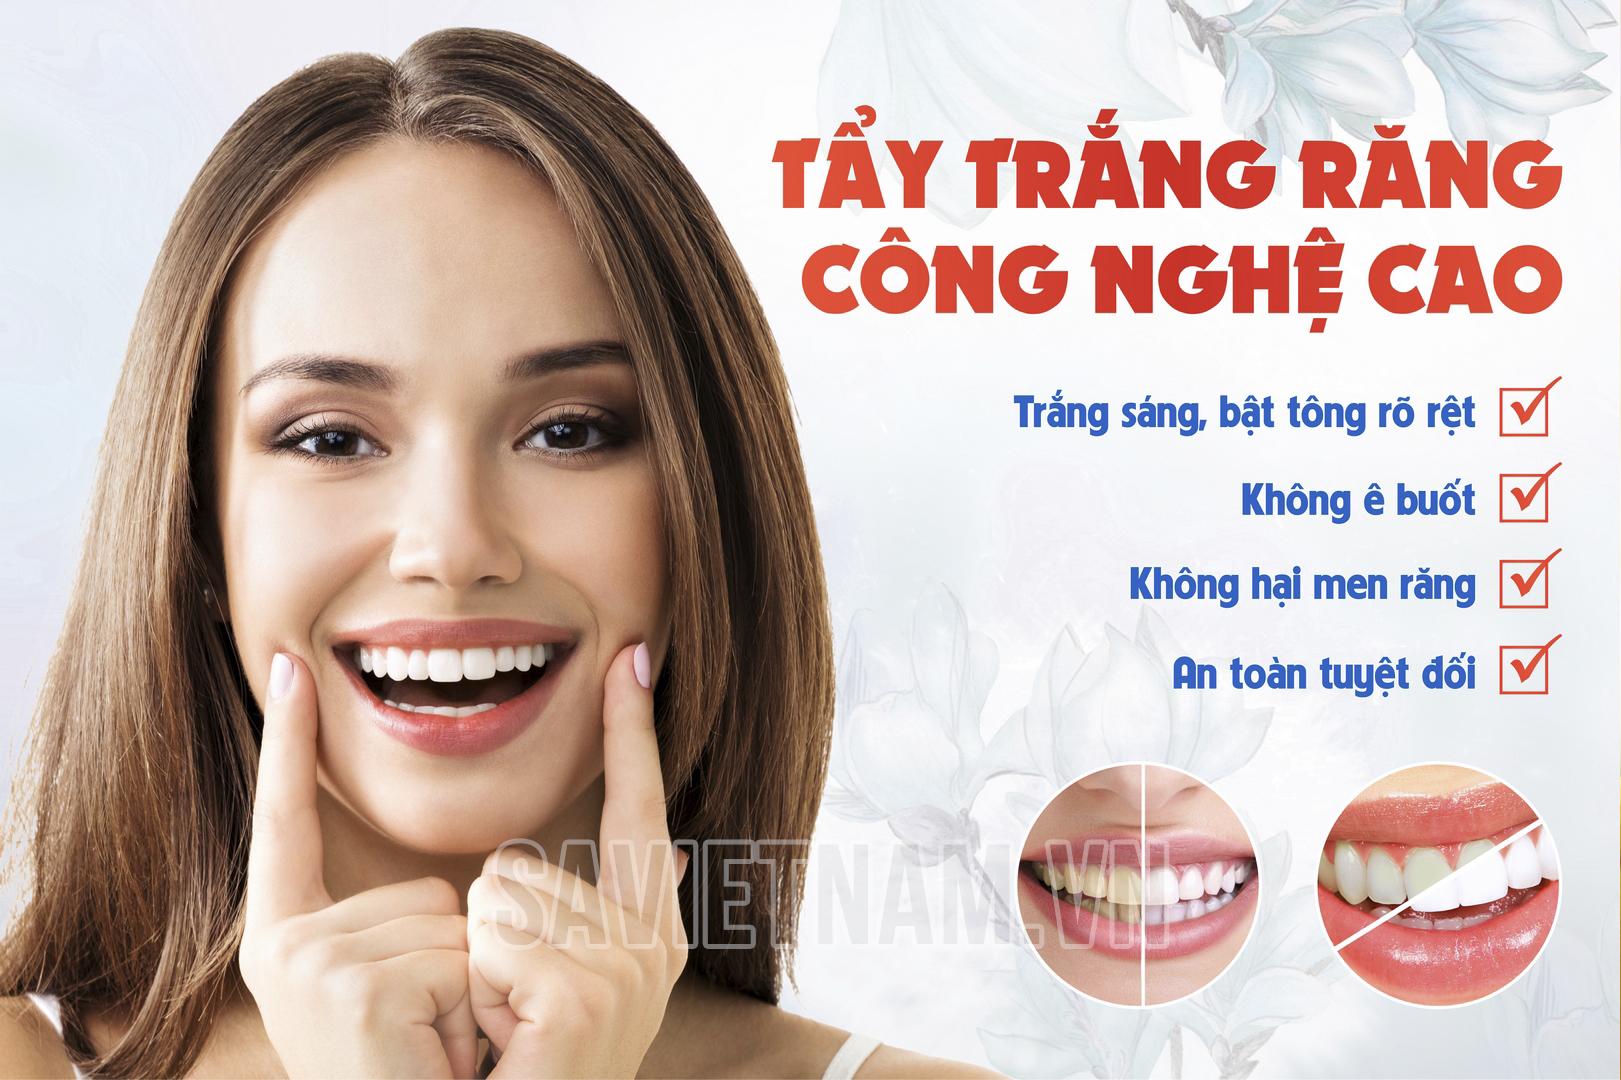 Tranh tẩy trắng răng công nghệ cao – Công ty TNHH Nha khoa SA Việt Nam